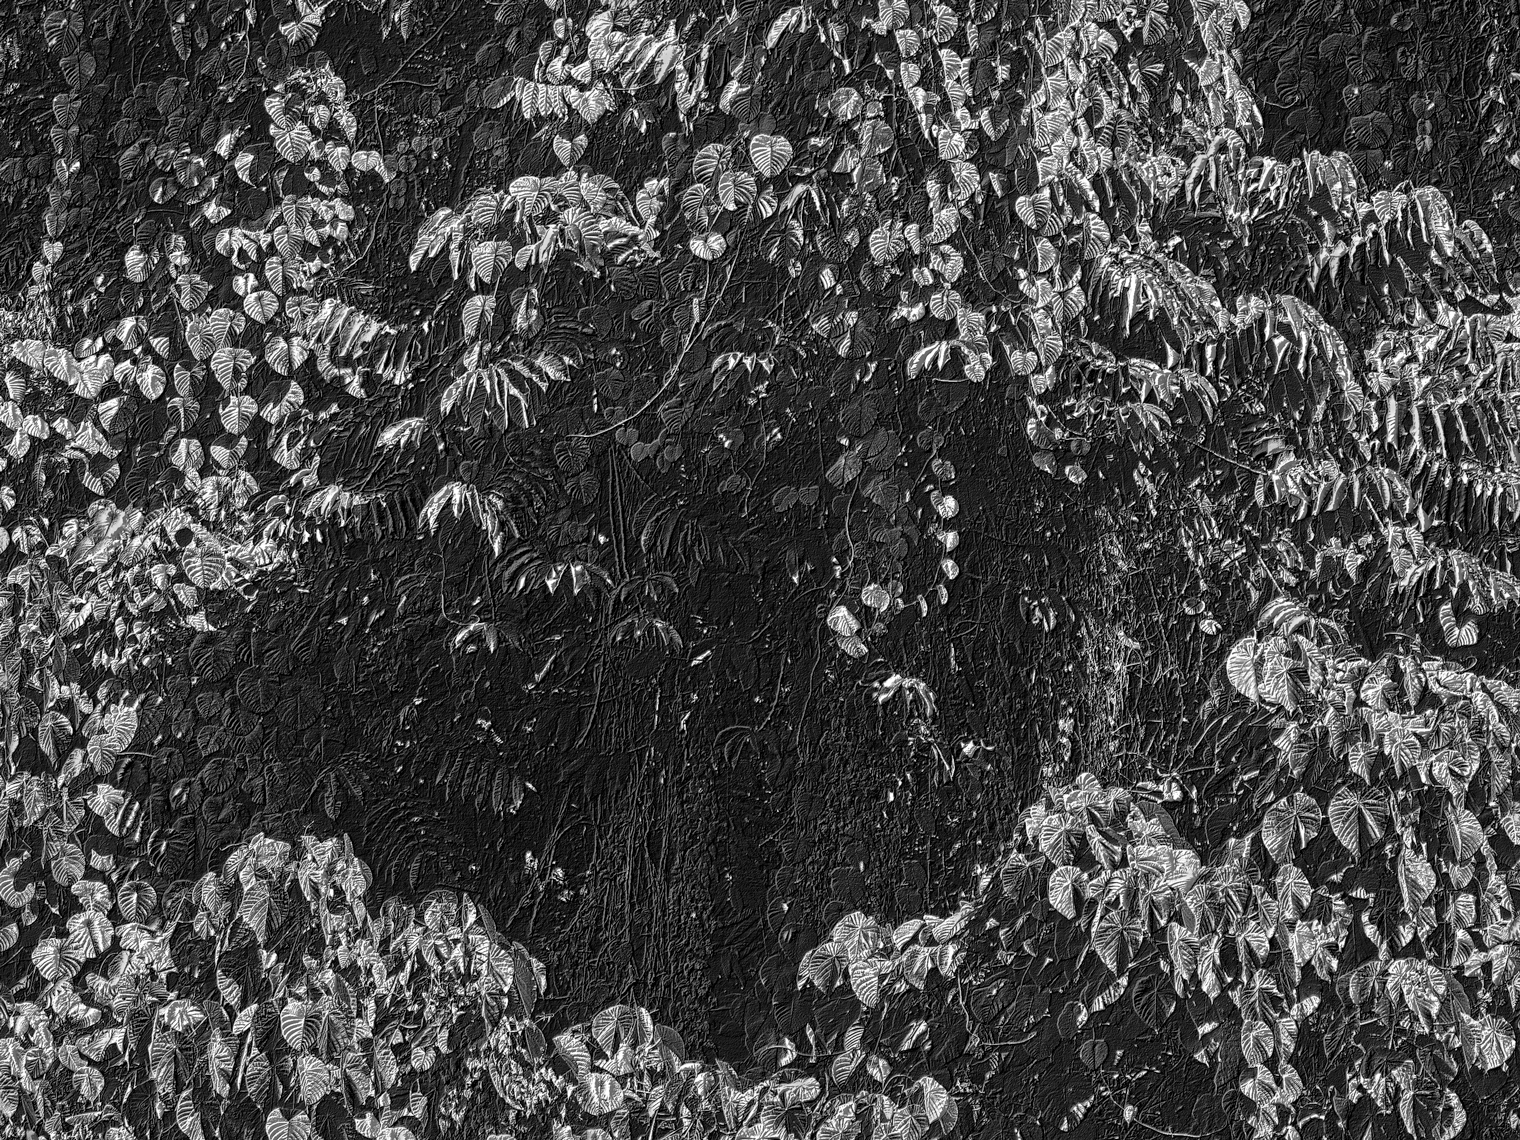 Jon Wyatt Photography - A tsunami of vegetation - invasive vines in samoa